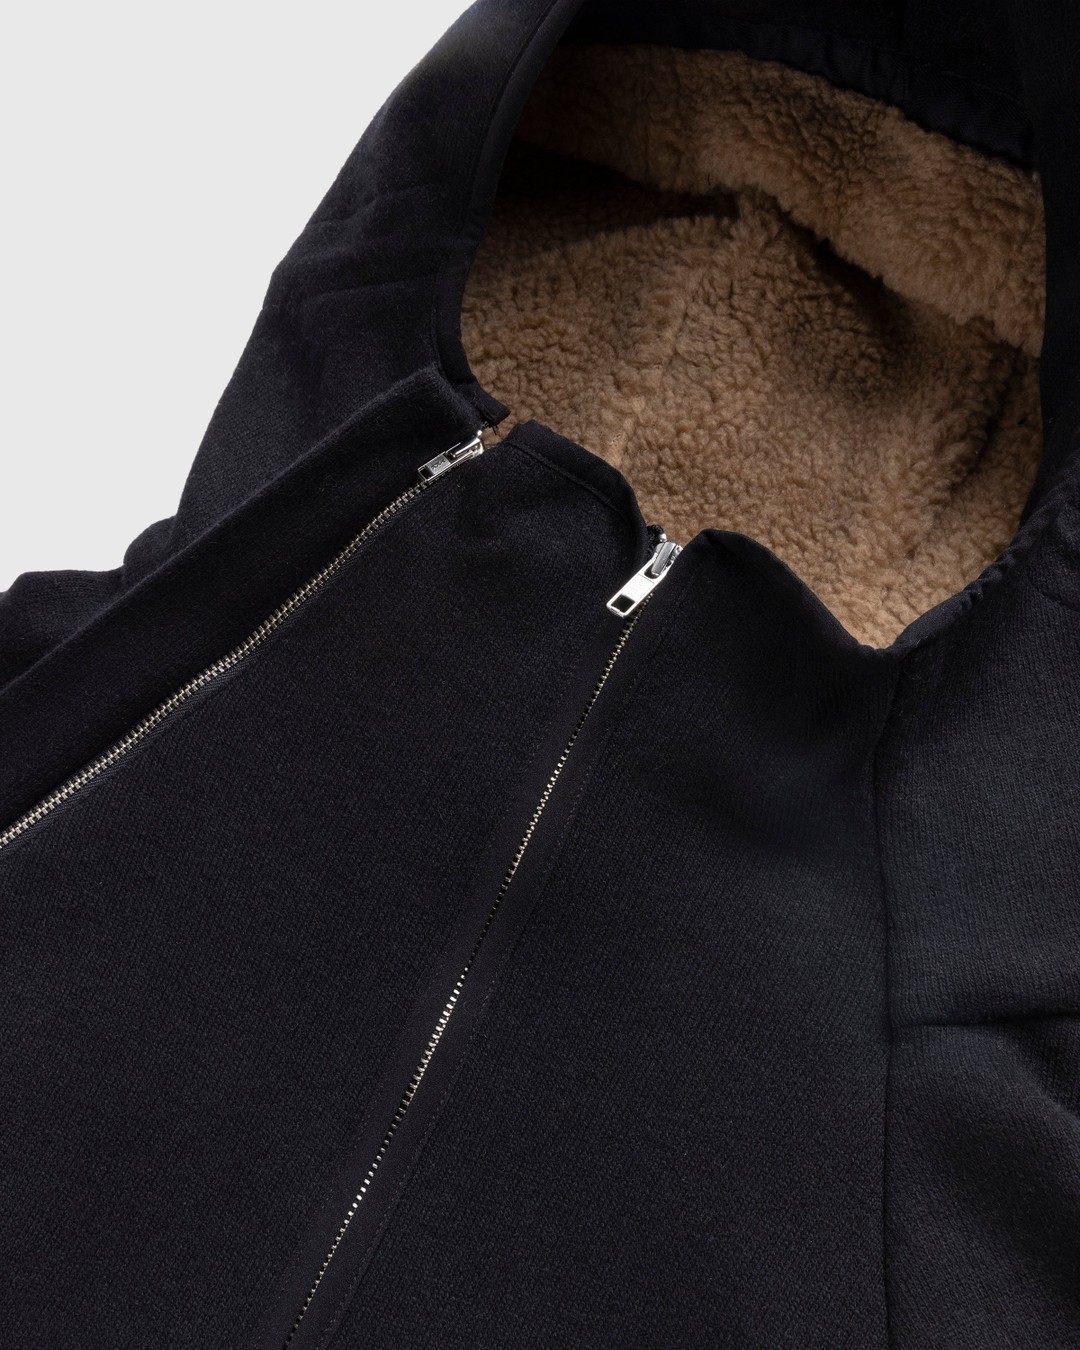 RANRA – Ooal Wool Jacket Black - Windbreakers - Black - Image 5